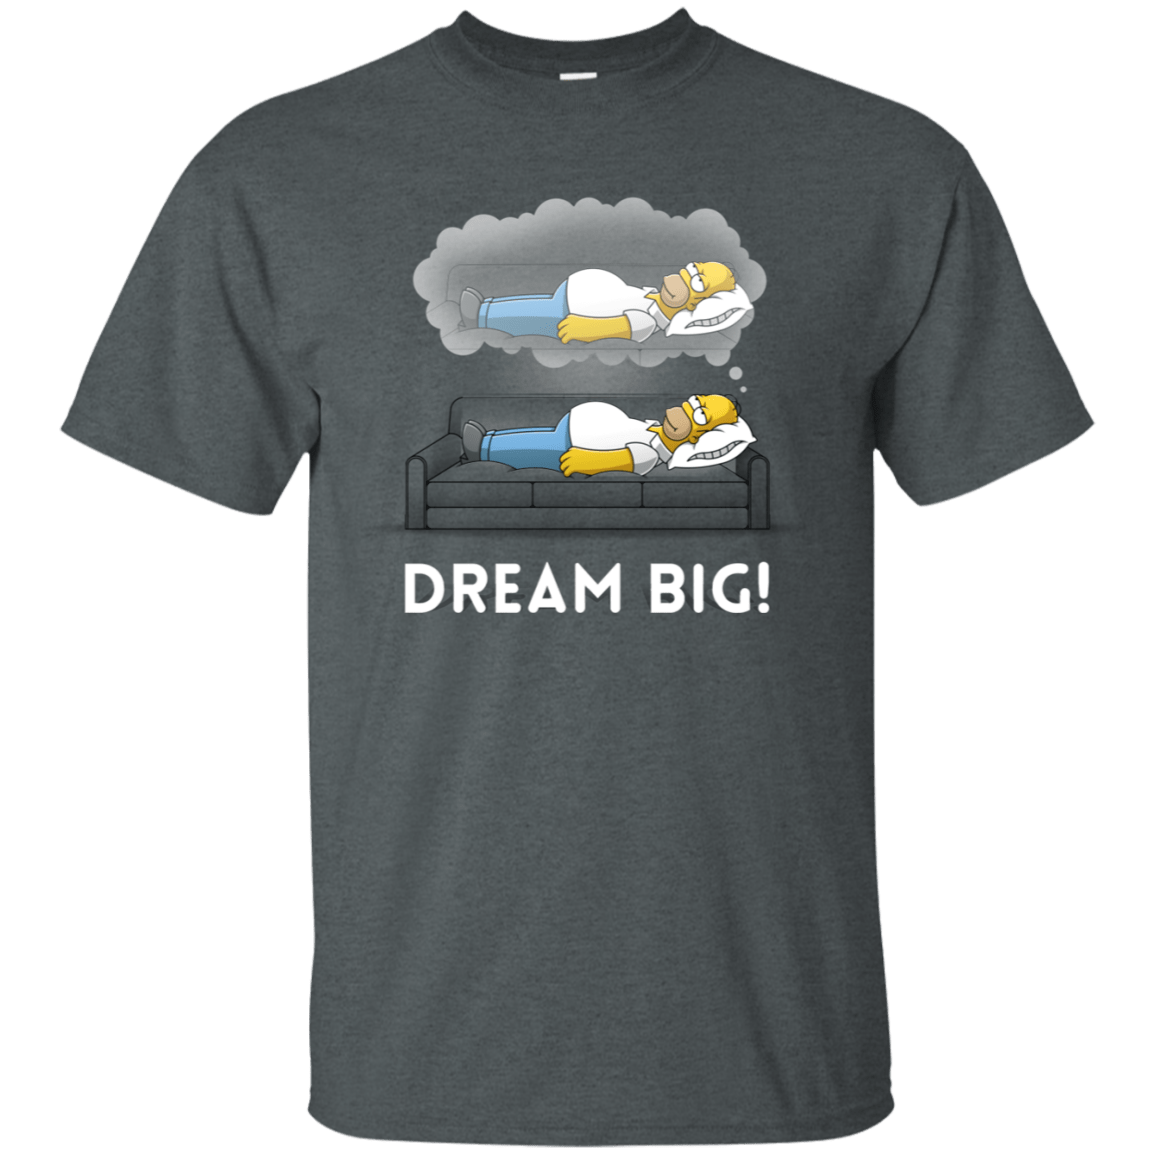 T-Shirts Dark Heather / S Dream Big! T-Shirt